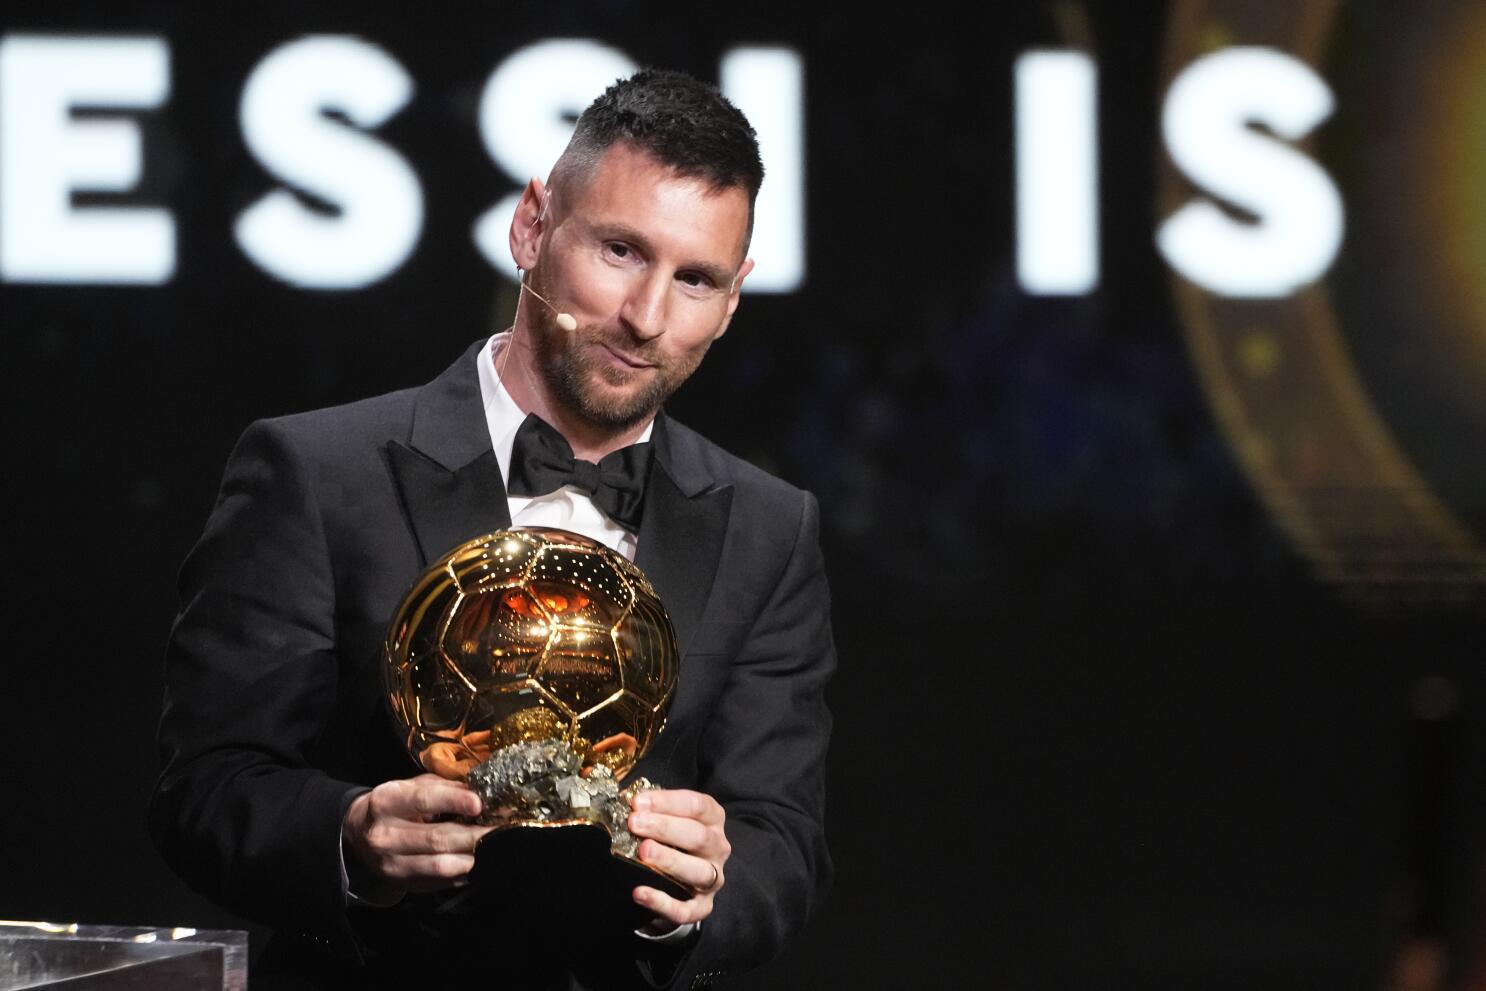 Messi extiende su récord y se lleva su octavo Balón de Oro; Bonmati gana el  trofeo femenino - Los Angeles Times